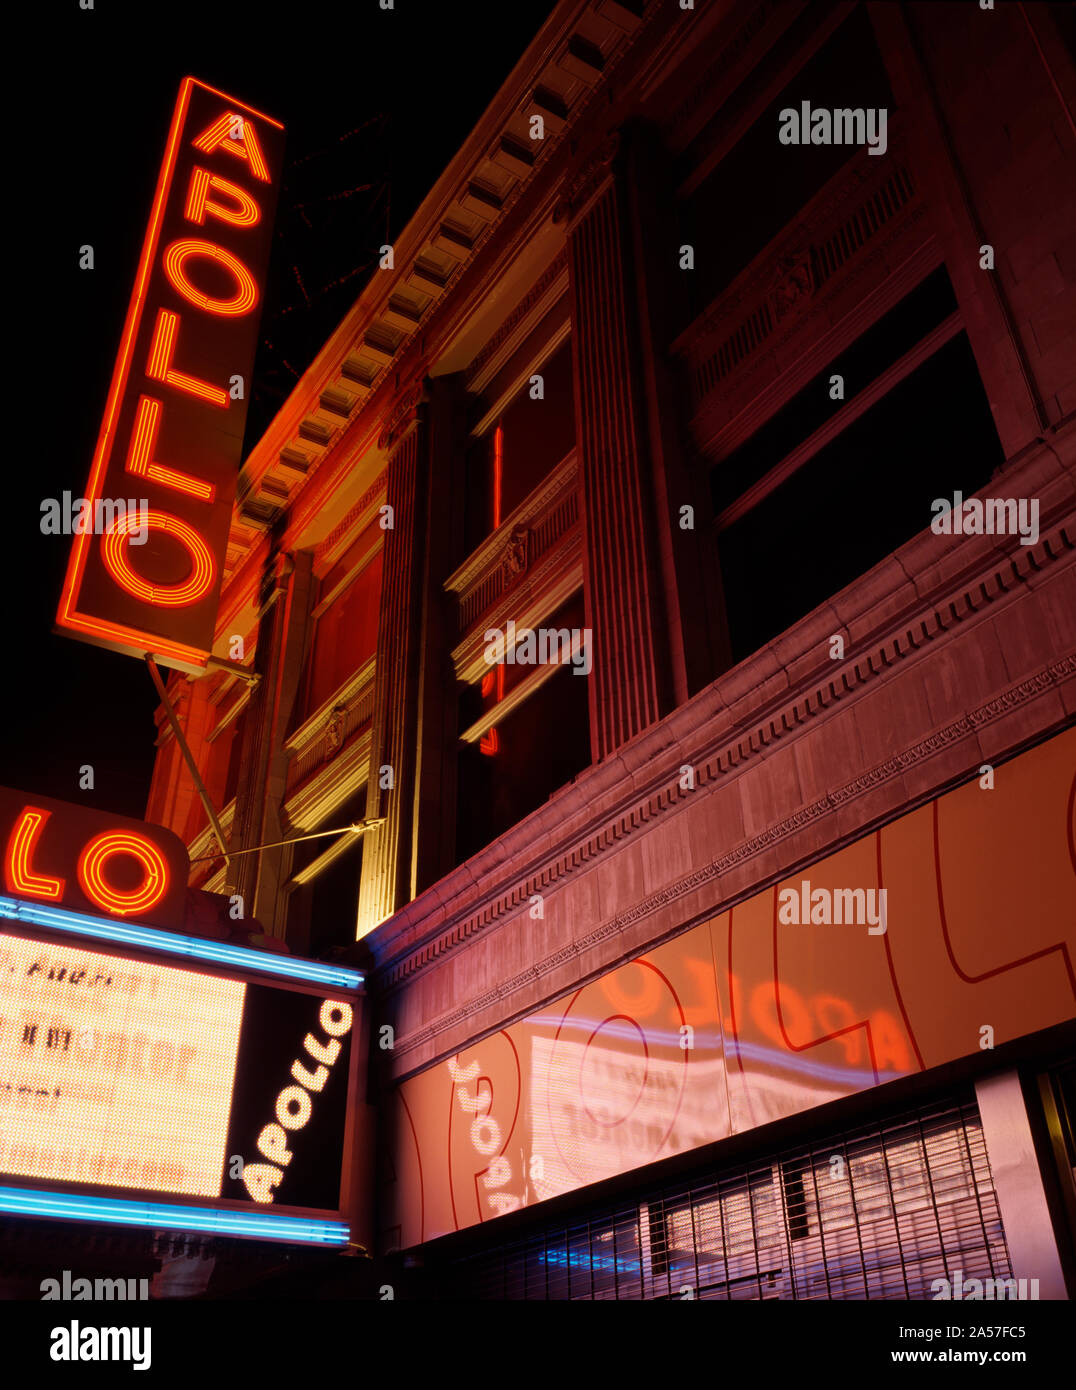 Basso angolo di visione di un teatro illuminata di notte, Teatro Apollo di Harlem, Manhattan, New York City, nello Stato di New York, Stati Uniti d'America Foto Stock